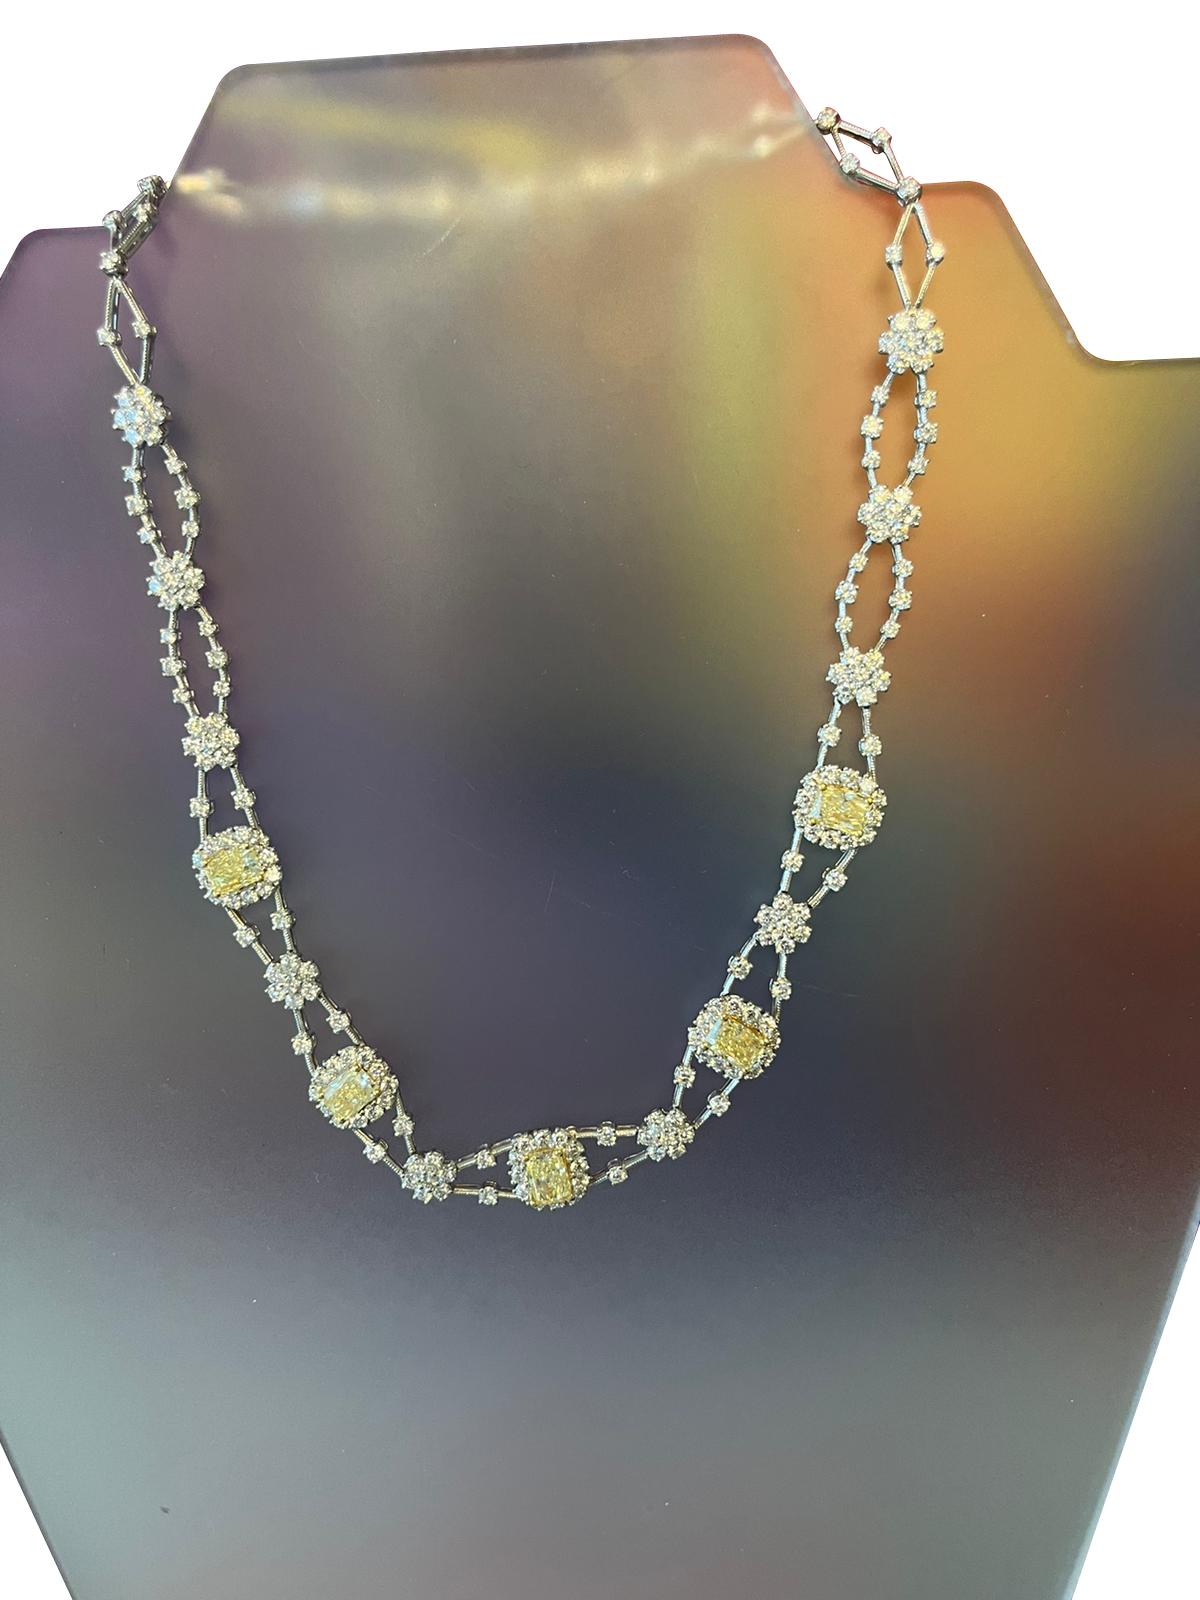 Ce collier de taille rayonnante naturelle avec diamants fantaisie comporte 11,8ctw de diamants rayonnants jaunes. Magnifique collier en diamants. un bijou indispensable. en or blanc 14 carats. Le collier est également incrusté de diamants blancs